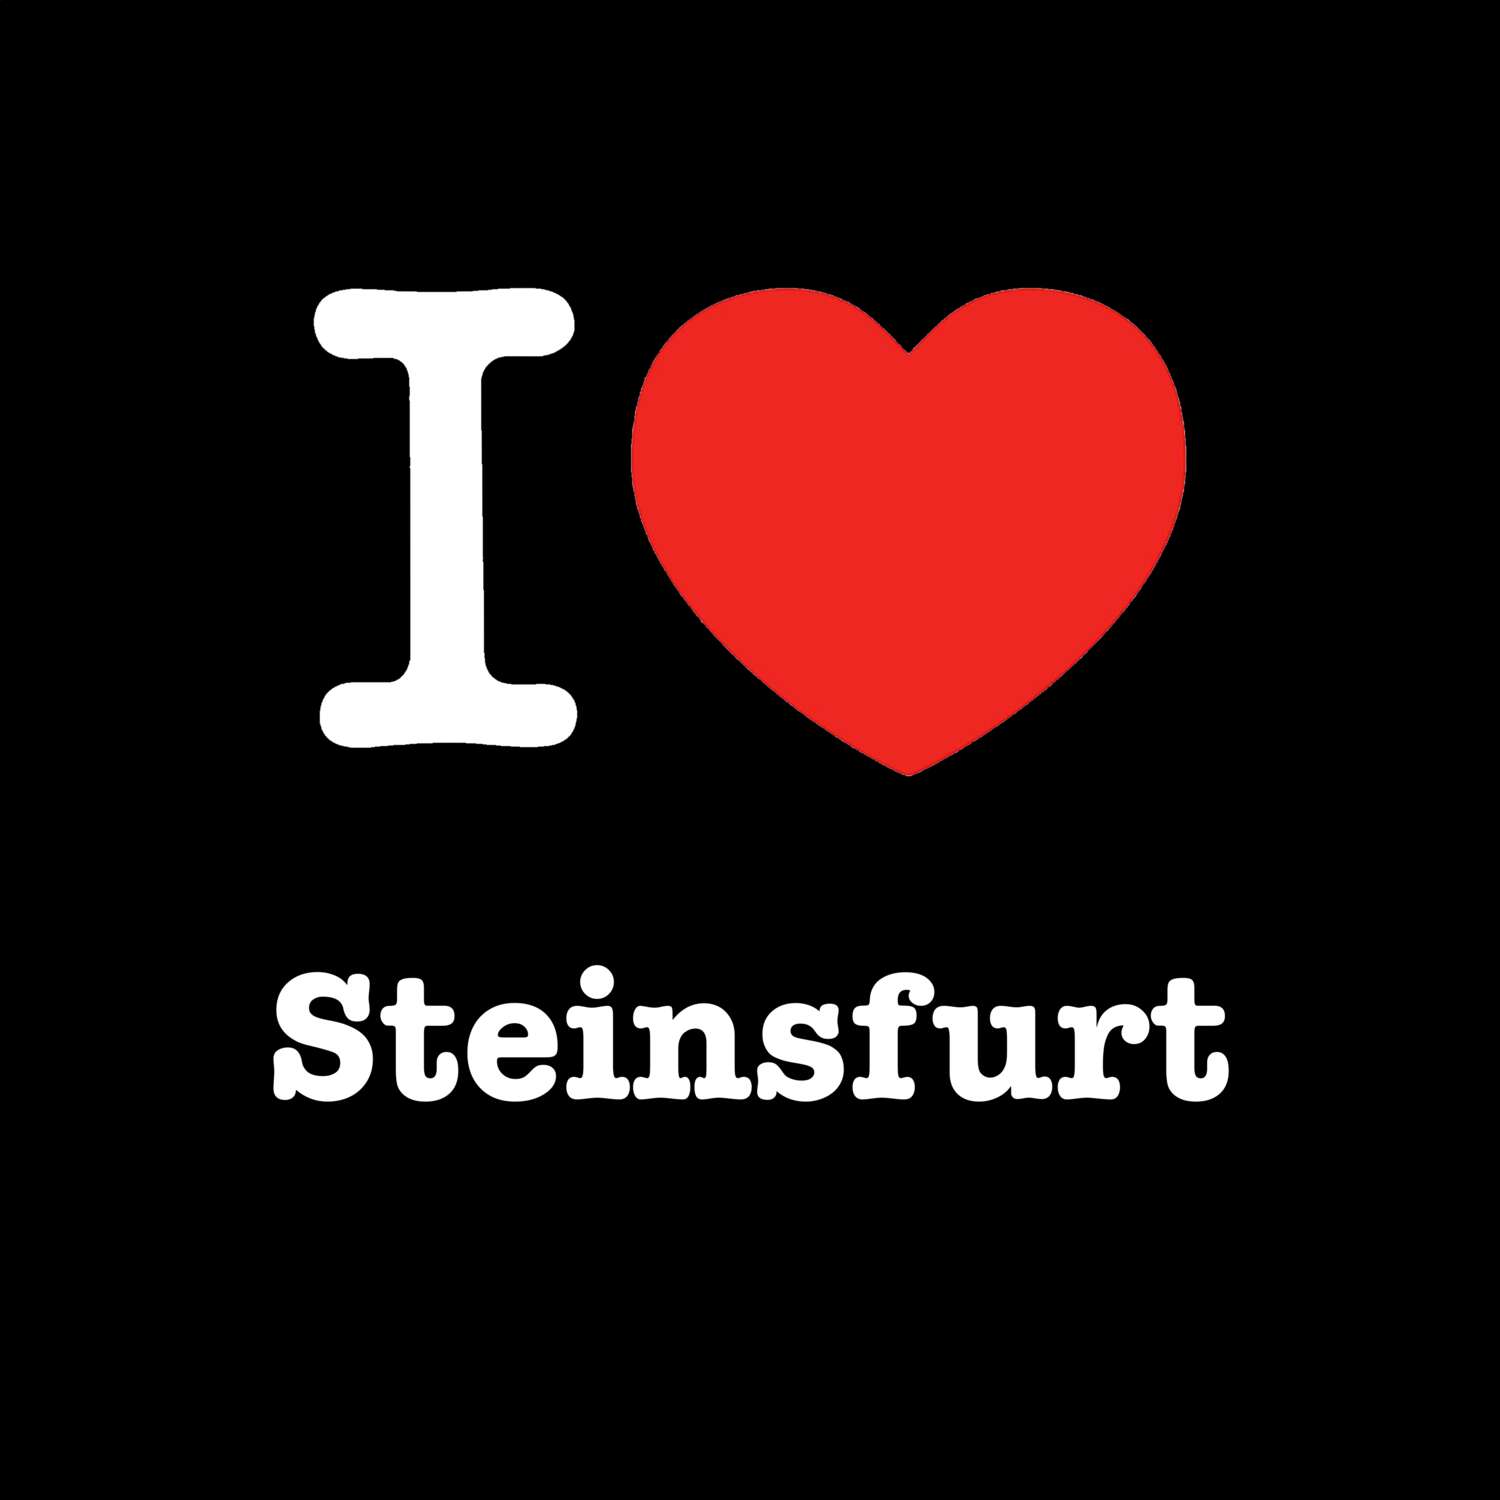 Steinsfurt T-Shirt »I love«